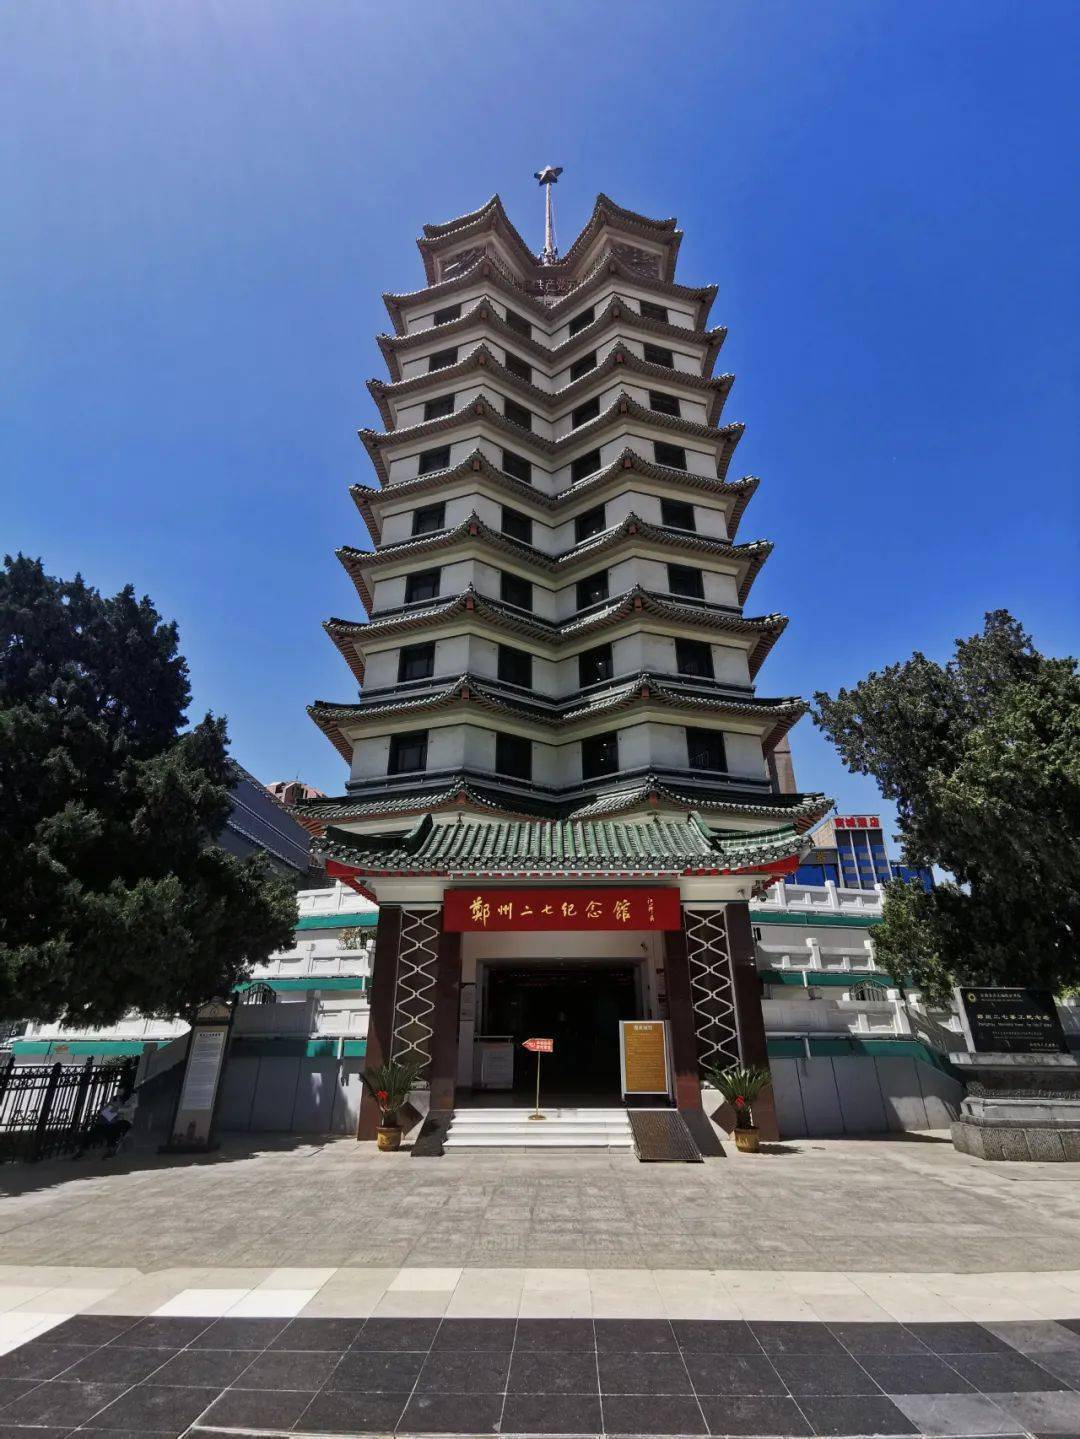 作为郑州市红色革命的地标建筑,二七纪念塔的双塔造型给每位来到郑州